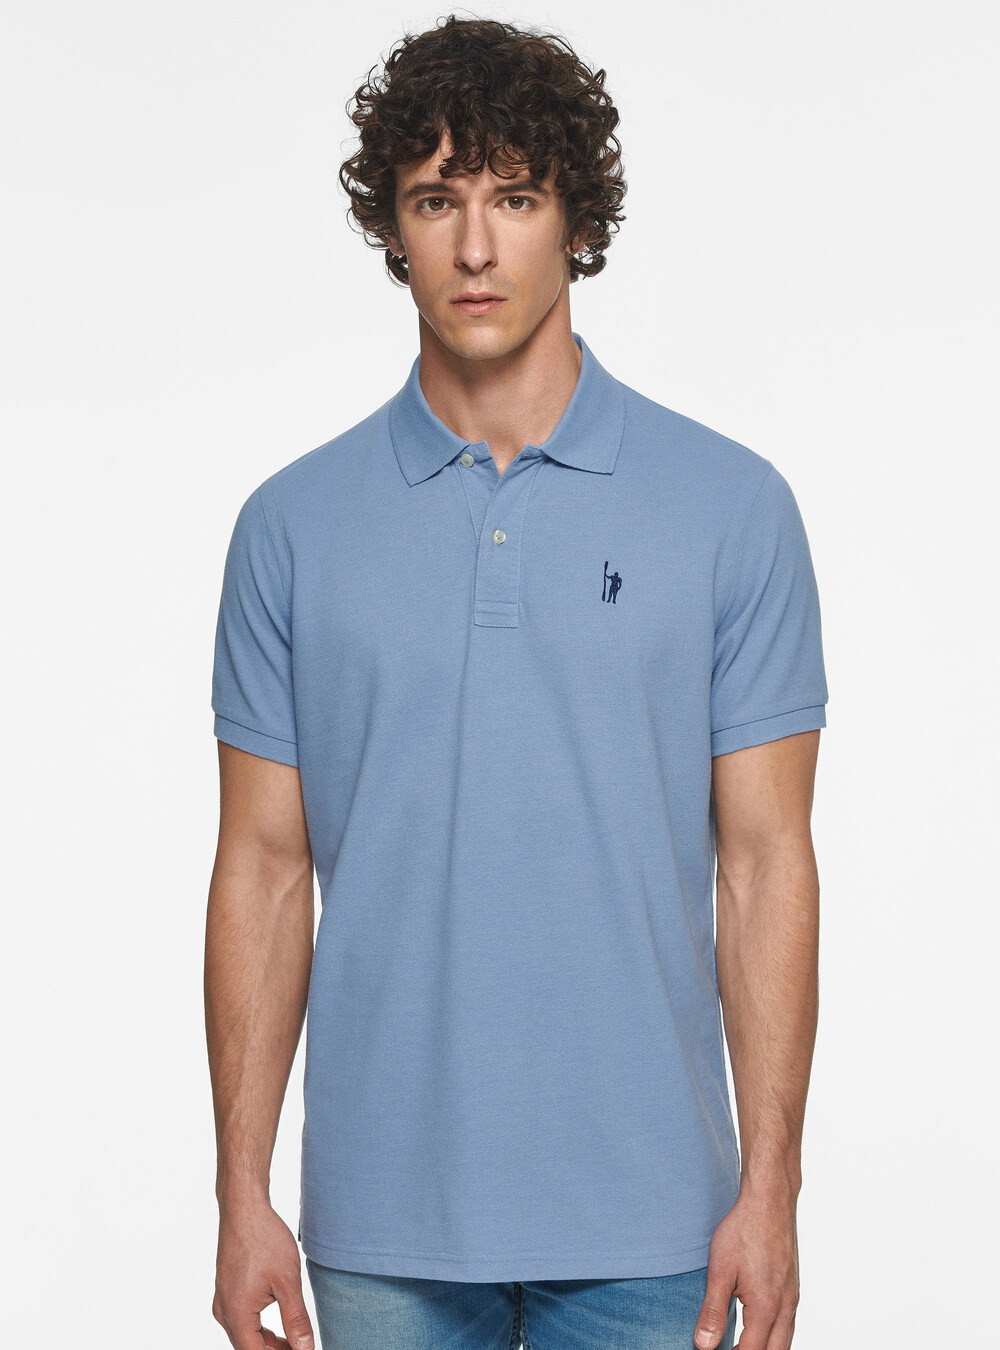 Piqué polo shirt with embroidery | GutteridgeUS | Polo Uomo